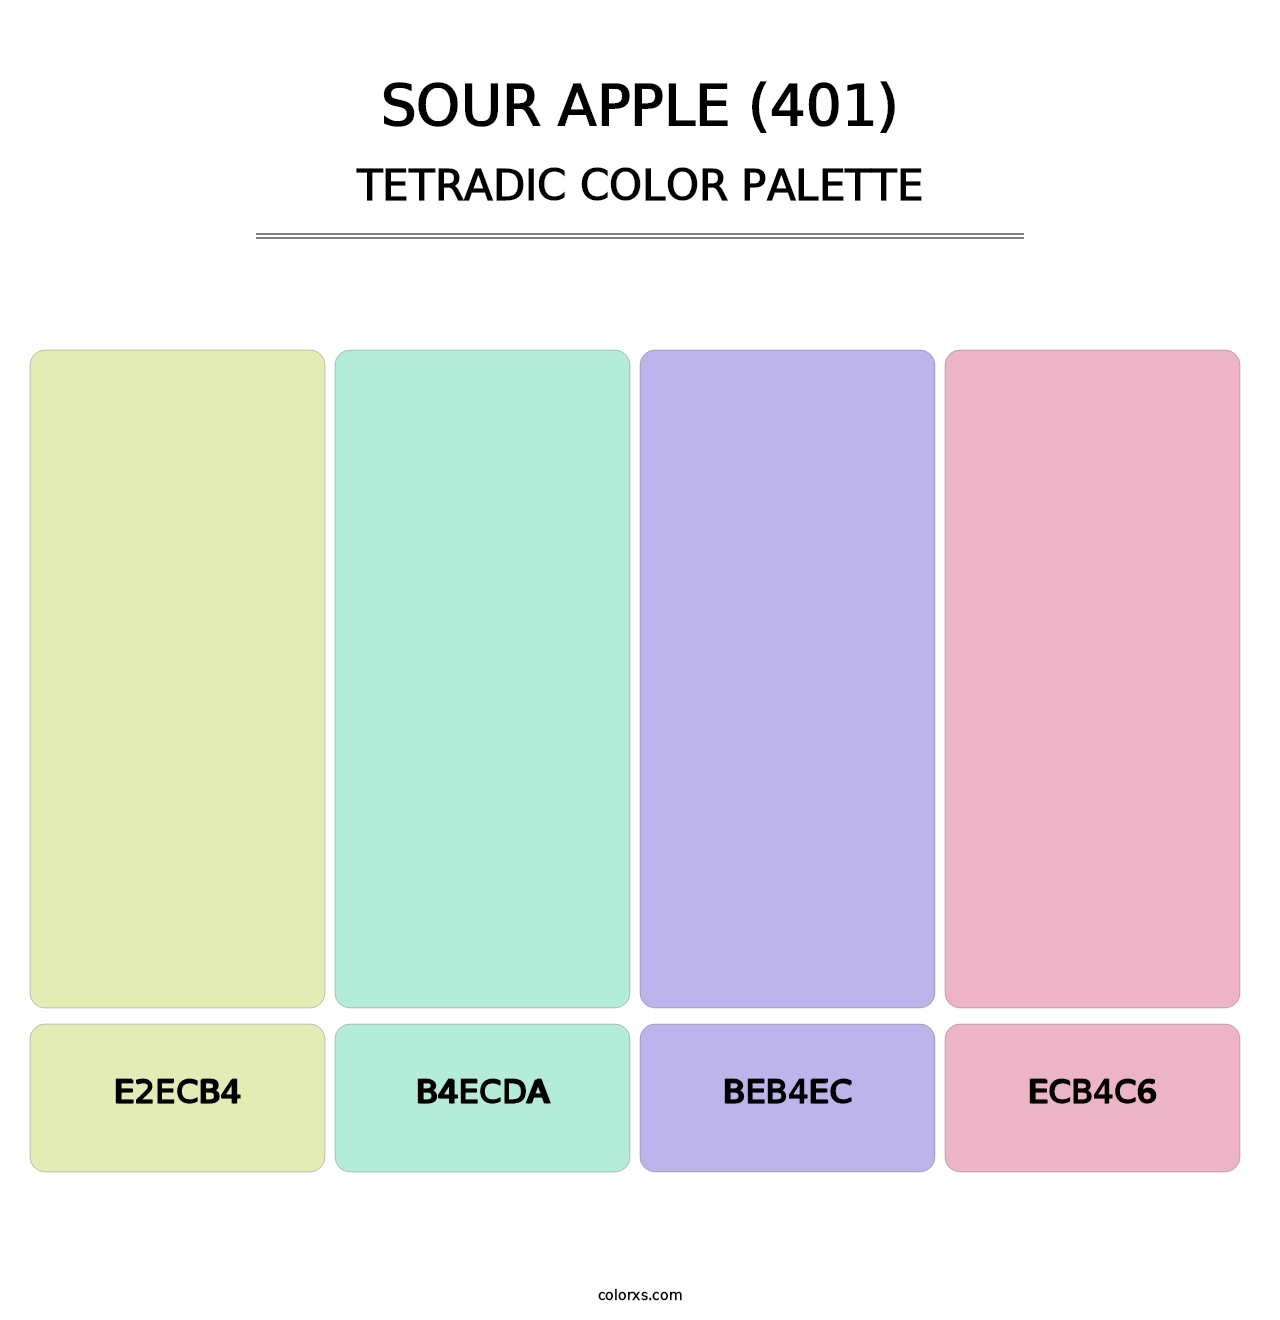 Sour Apple (401) - Tetradic Color Palette